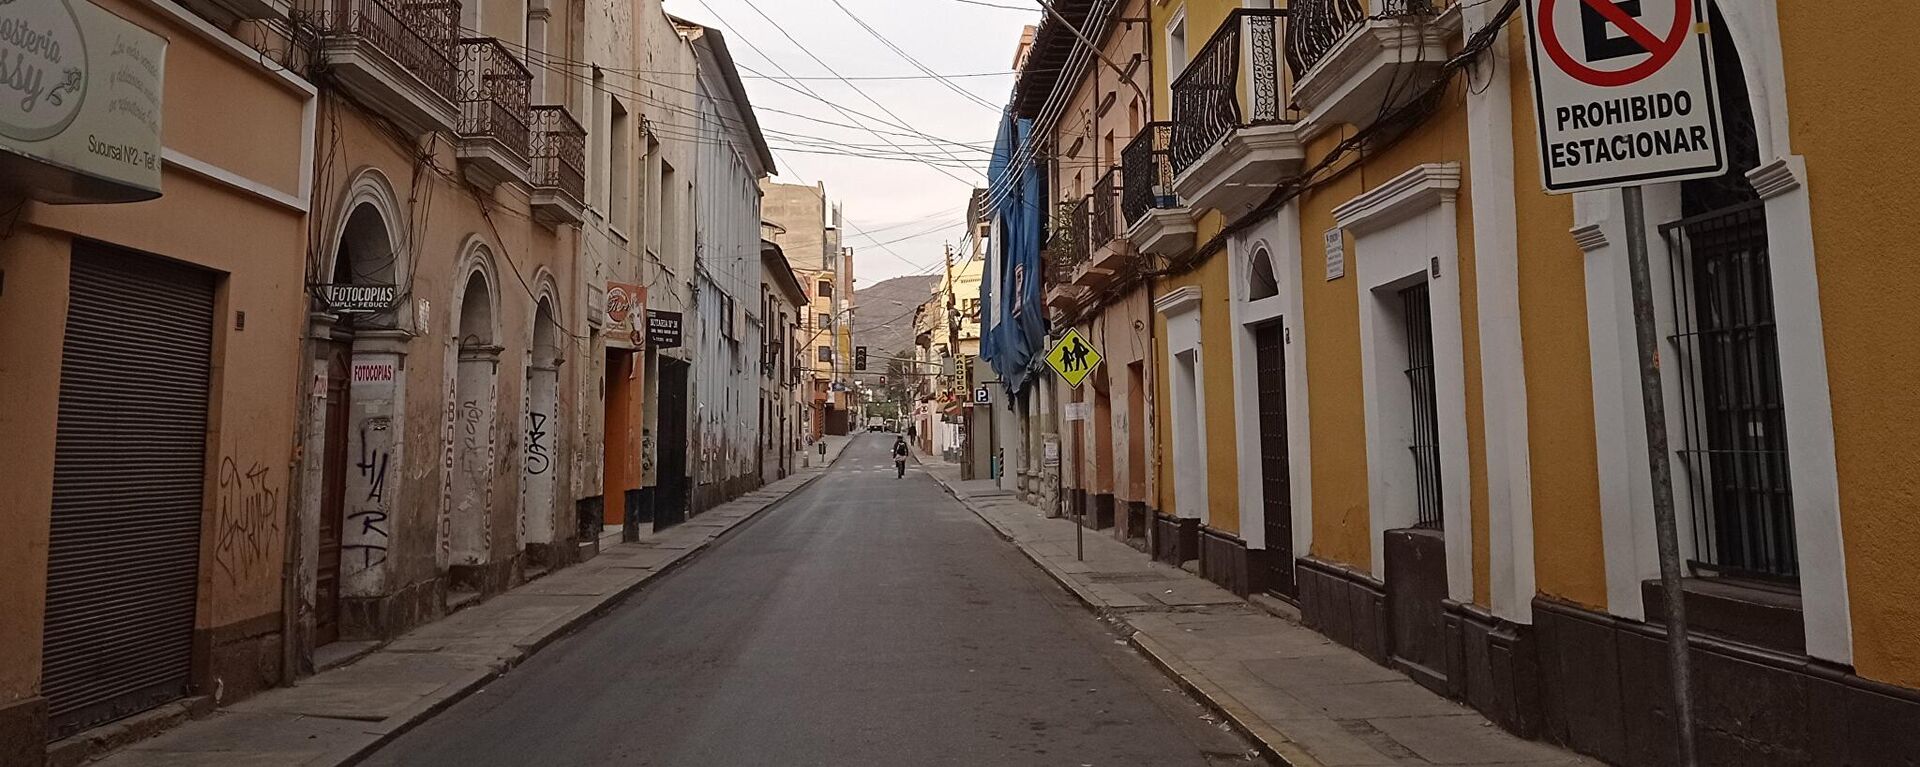 Las calles vacías de Cochabamba - Sputnik Mundo, 1920, 12.06.2021